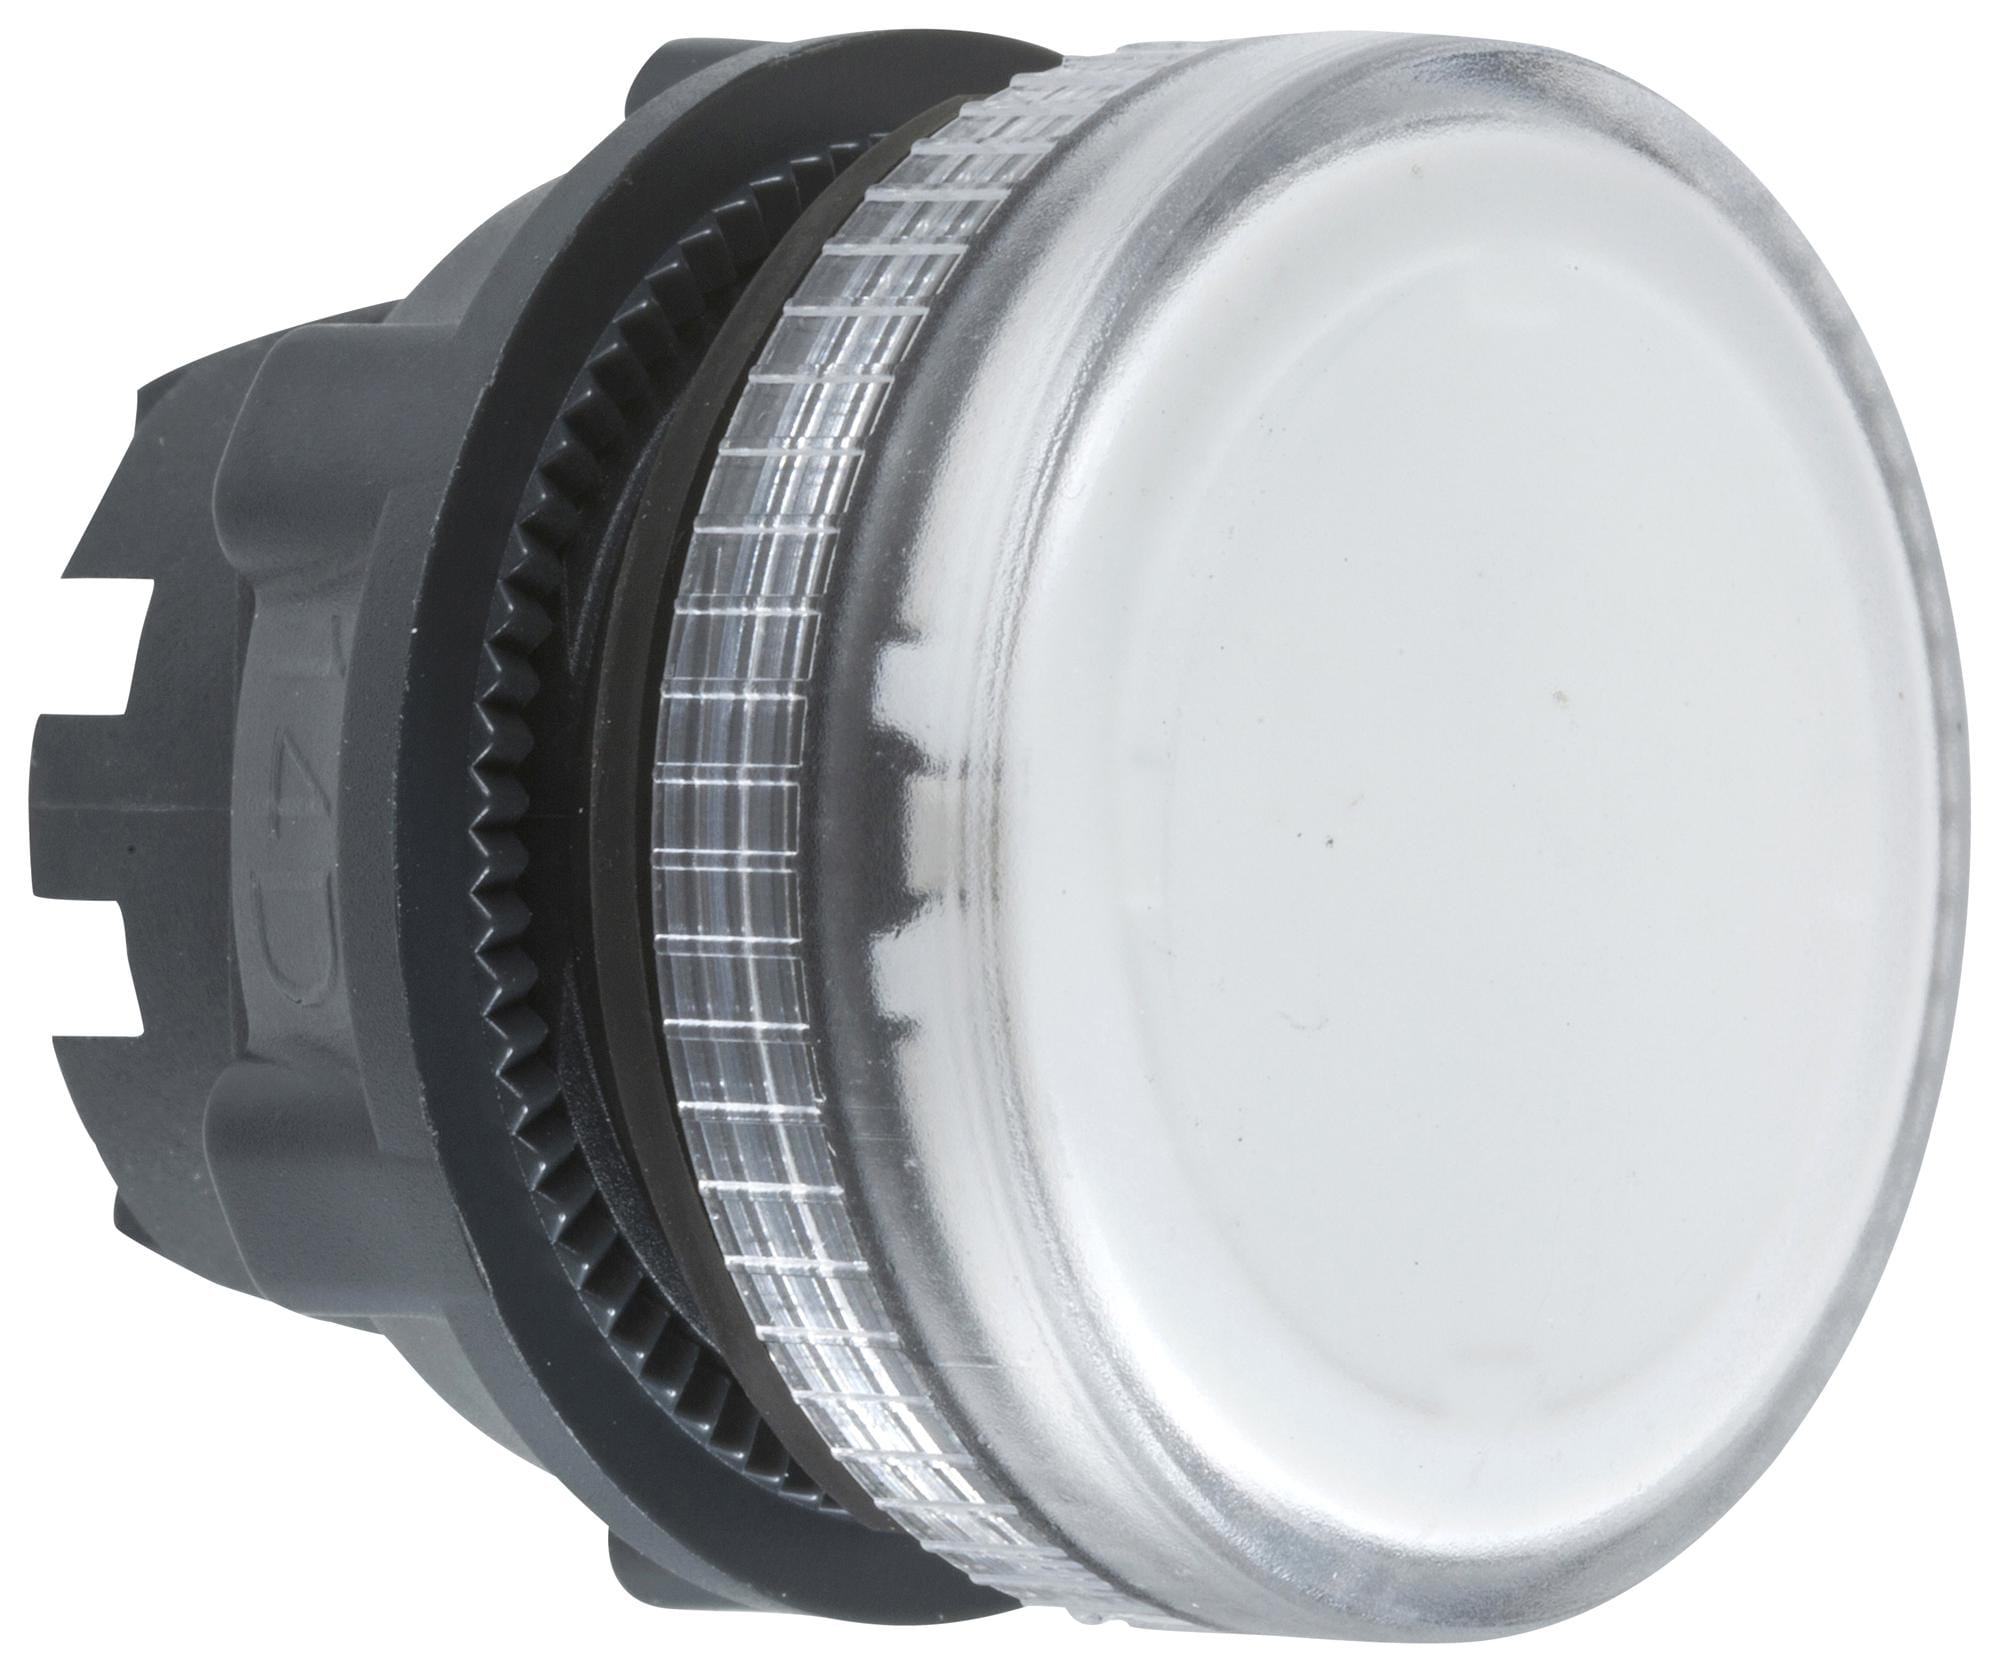 SCHNEIDER ELECTRIC Indicator Lenses ZB5AV07 PILOT LIGHT HEAD, CLEAR, ROUND, 22MM SCHNEIDER ELECTRIC 3115347 ZB5AV07